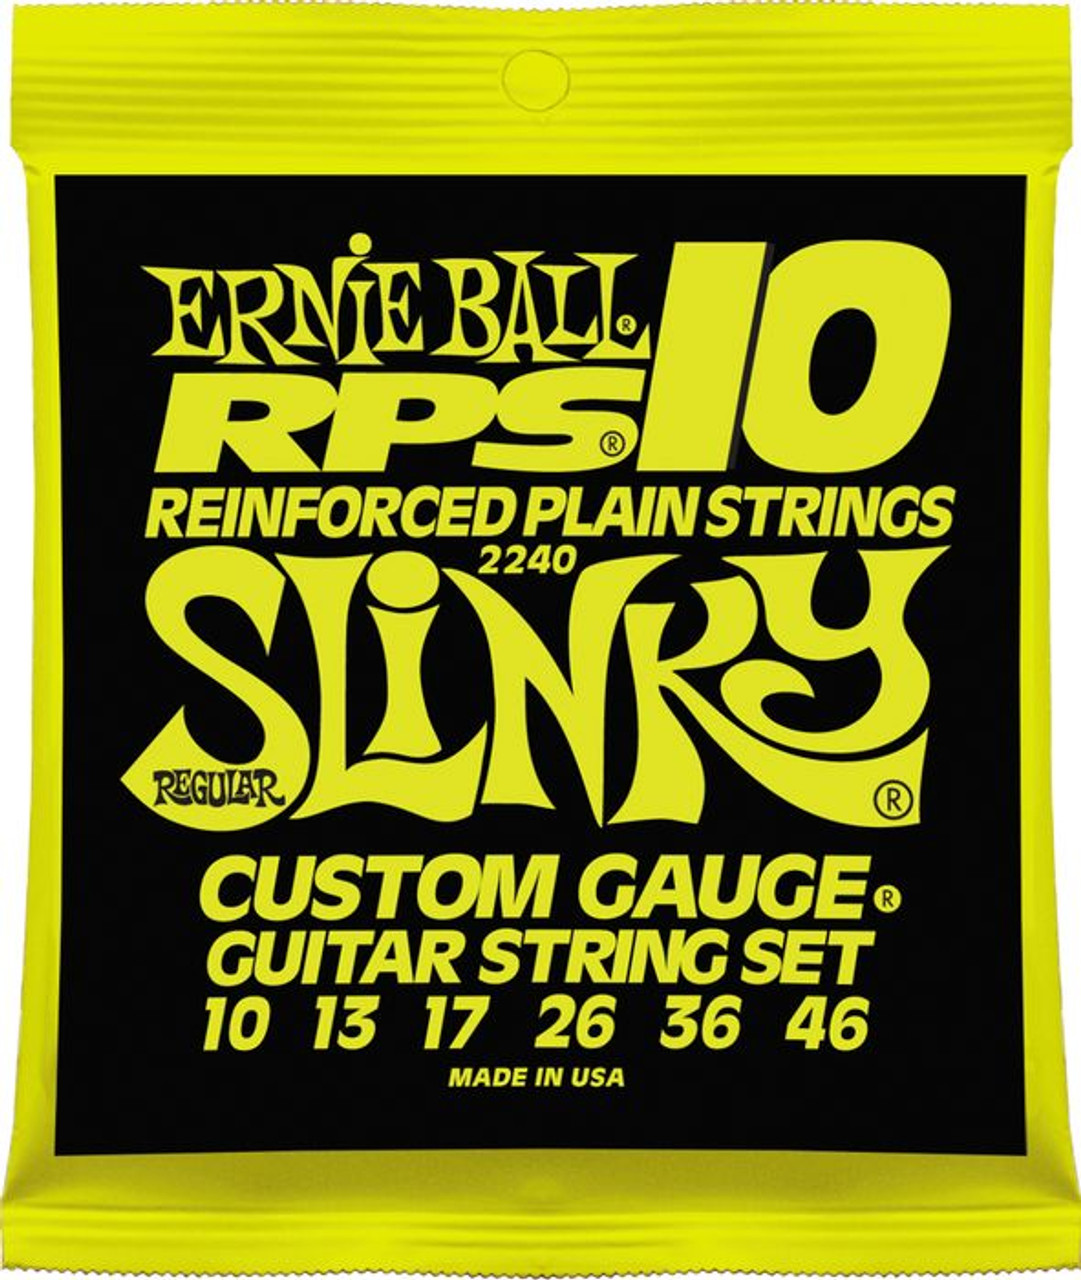 RPS　Nickel　Ball　Ernie　10-46　Guitar　Wound　2240　Electric　RPS　Slinky　Strings　Regular